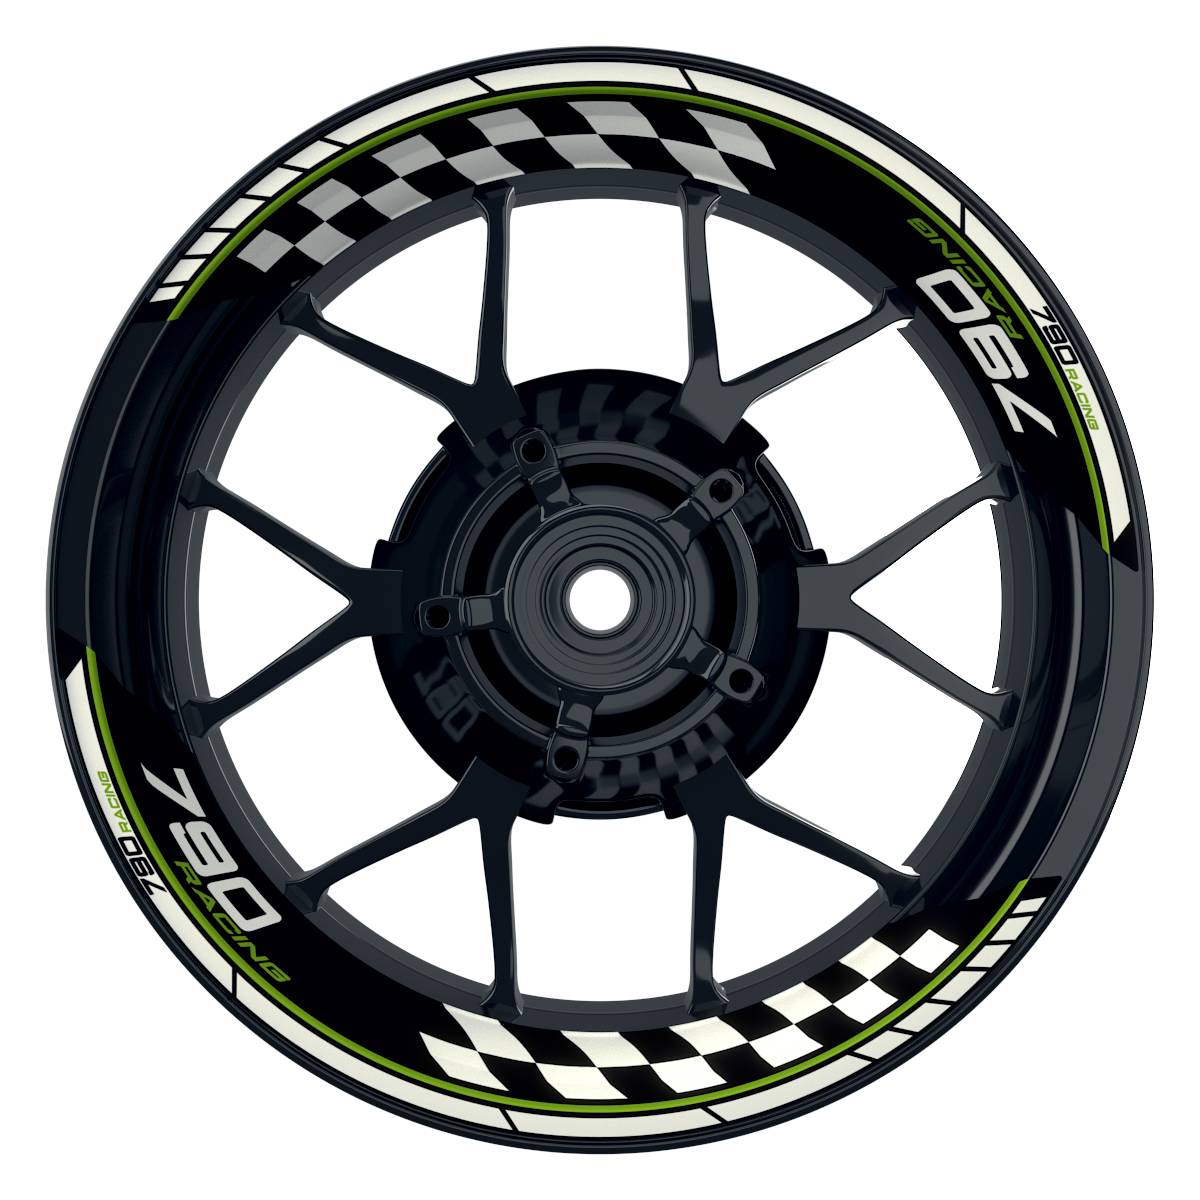 KTM Racing 790 Grid schwarz gruen Frontansicht